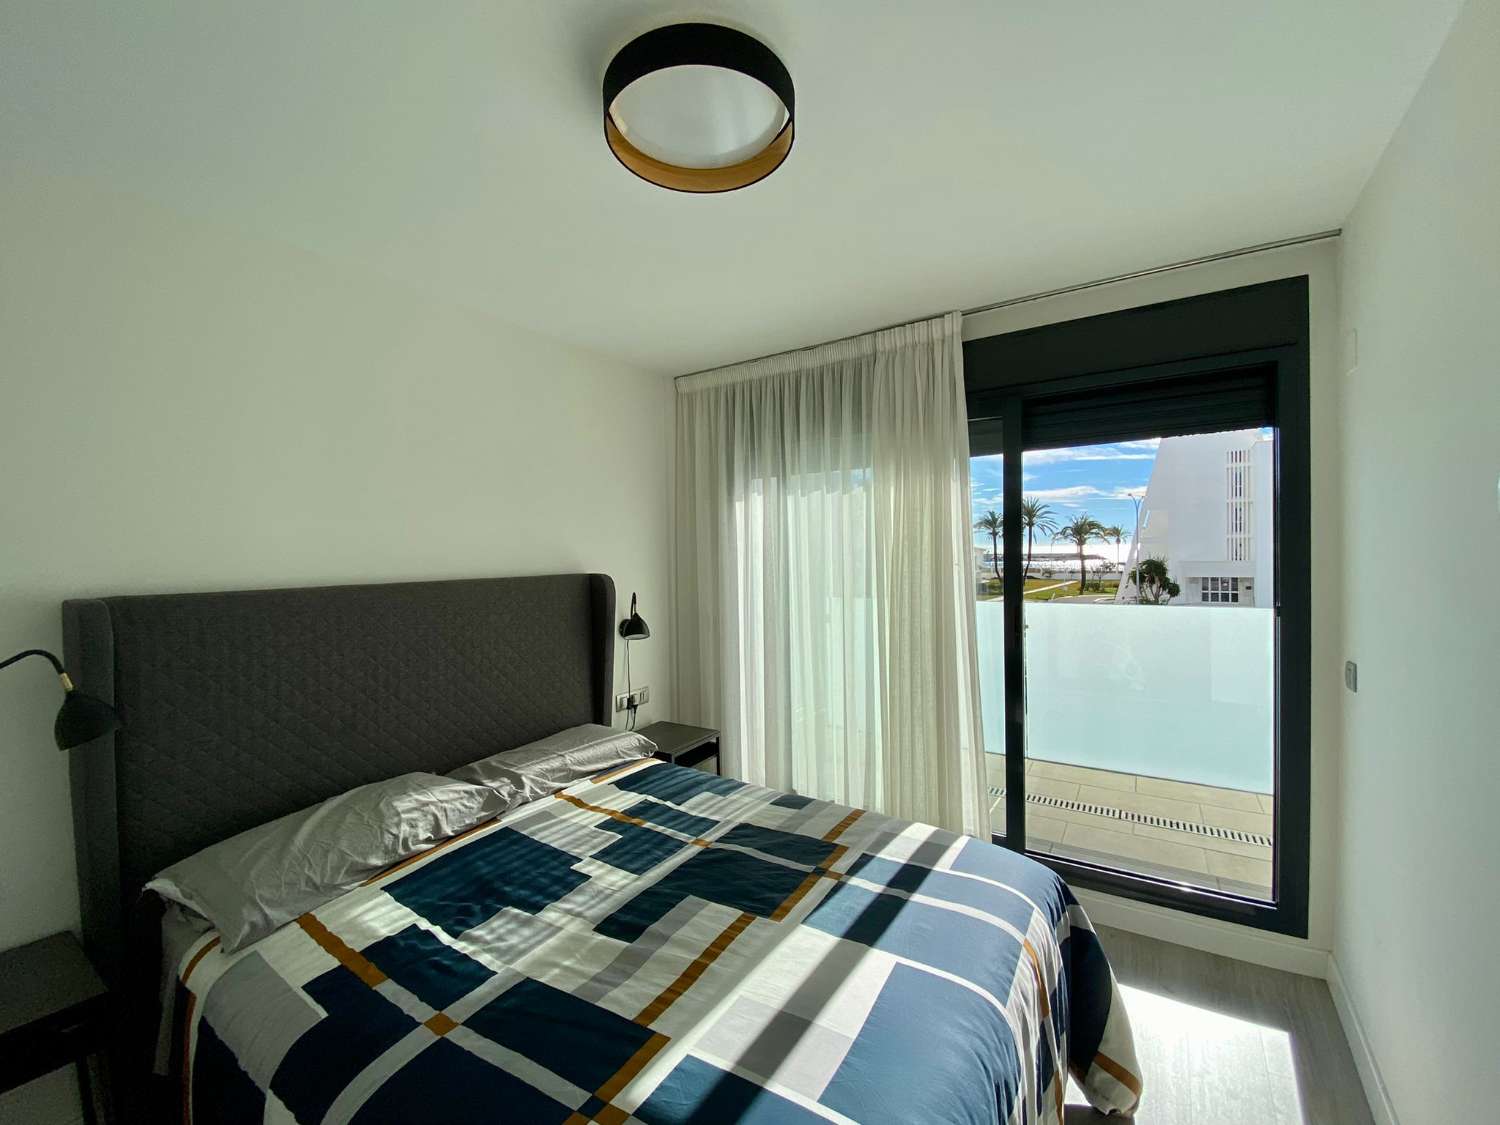 Apartamento dos dormitorios, con terraza, y piscina comunitaria junto a la playa del puerto de la Caleta, disponible para invierno